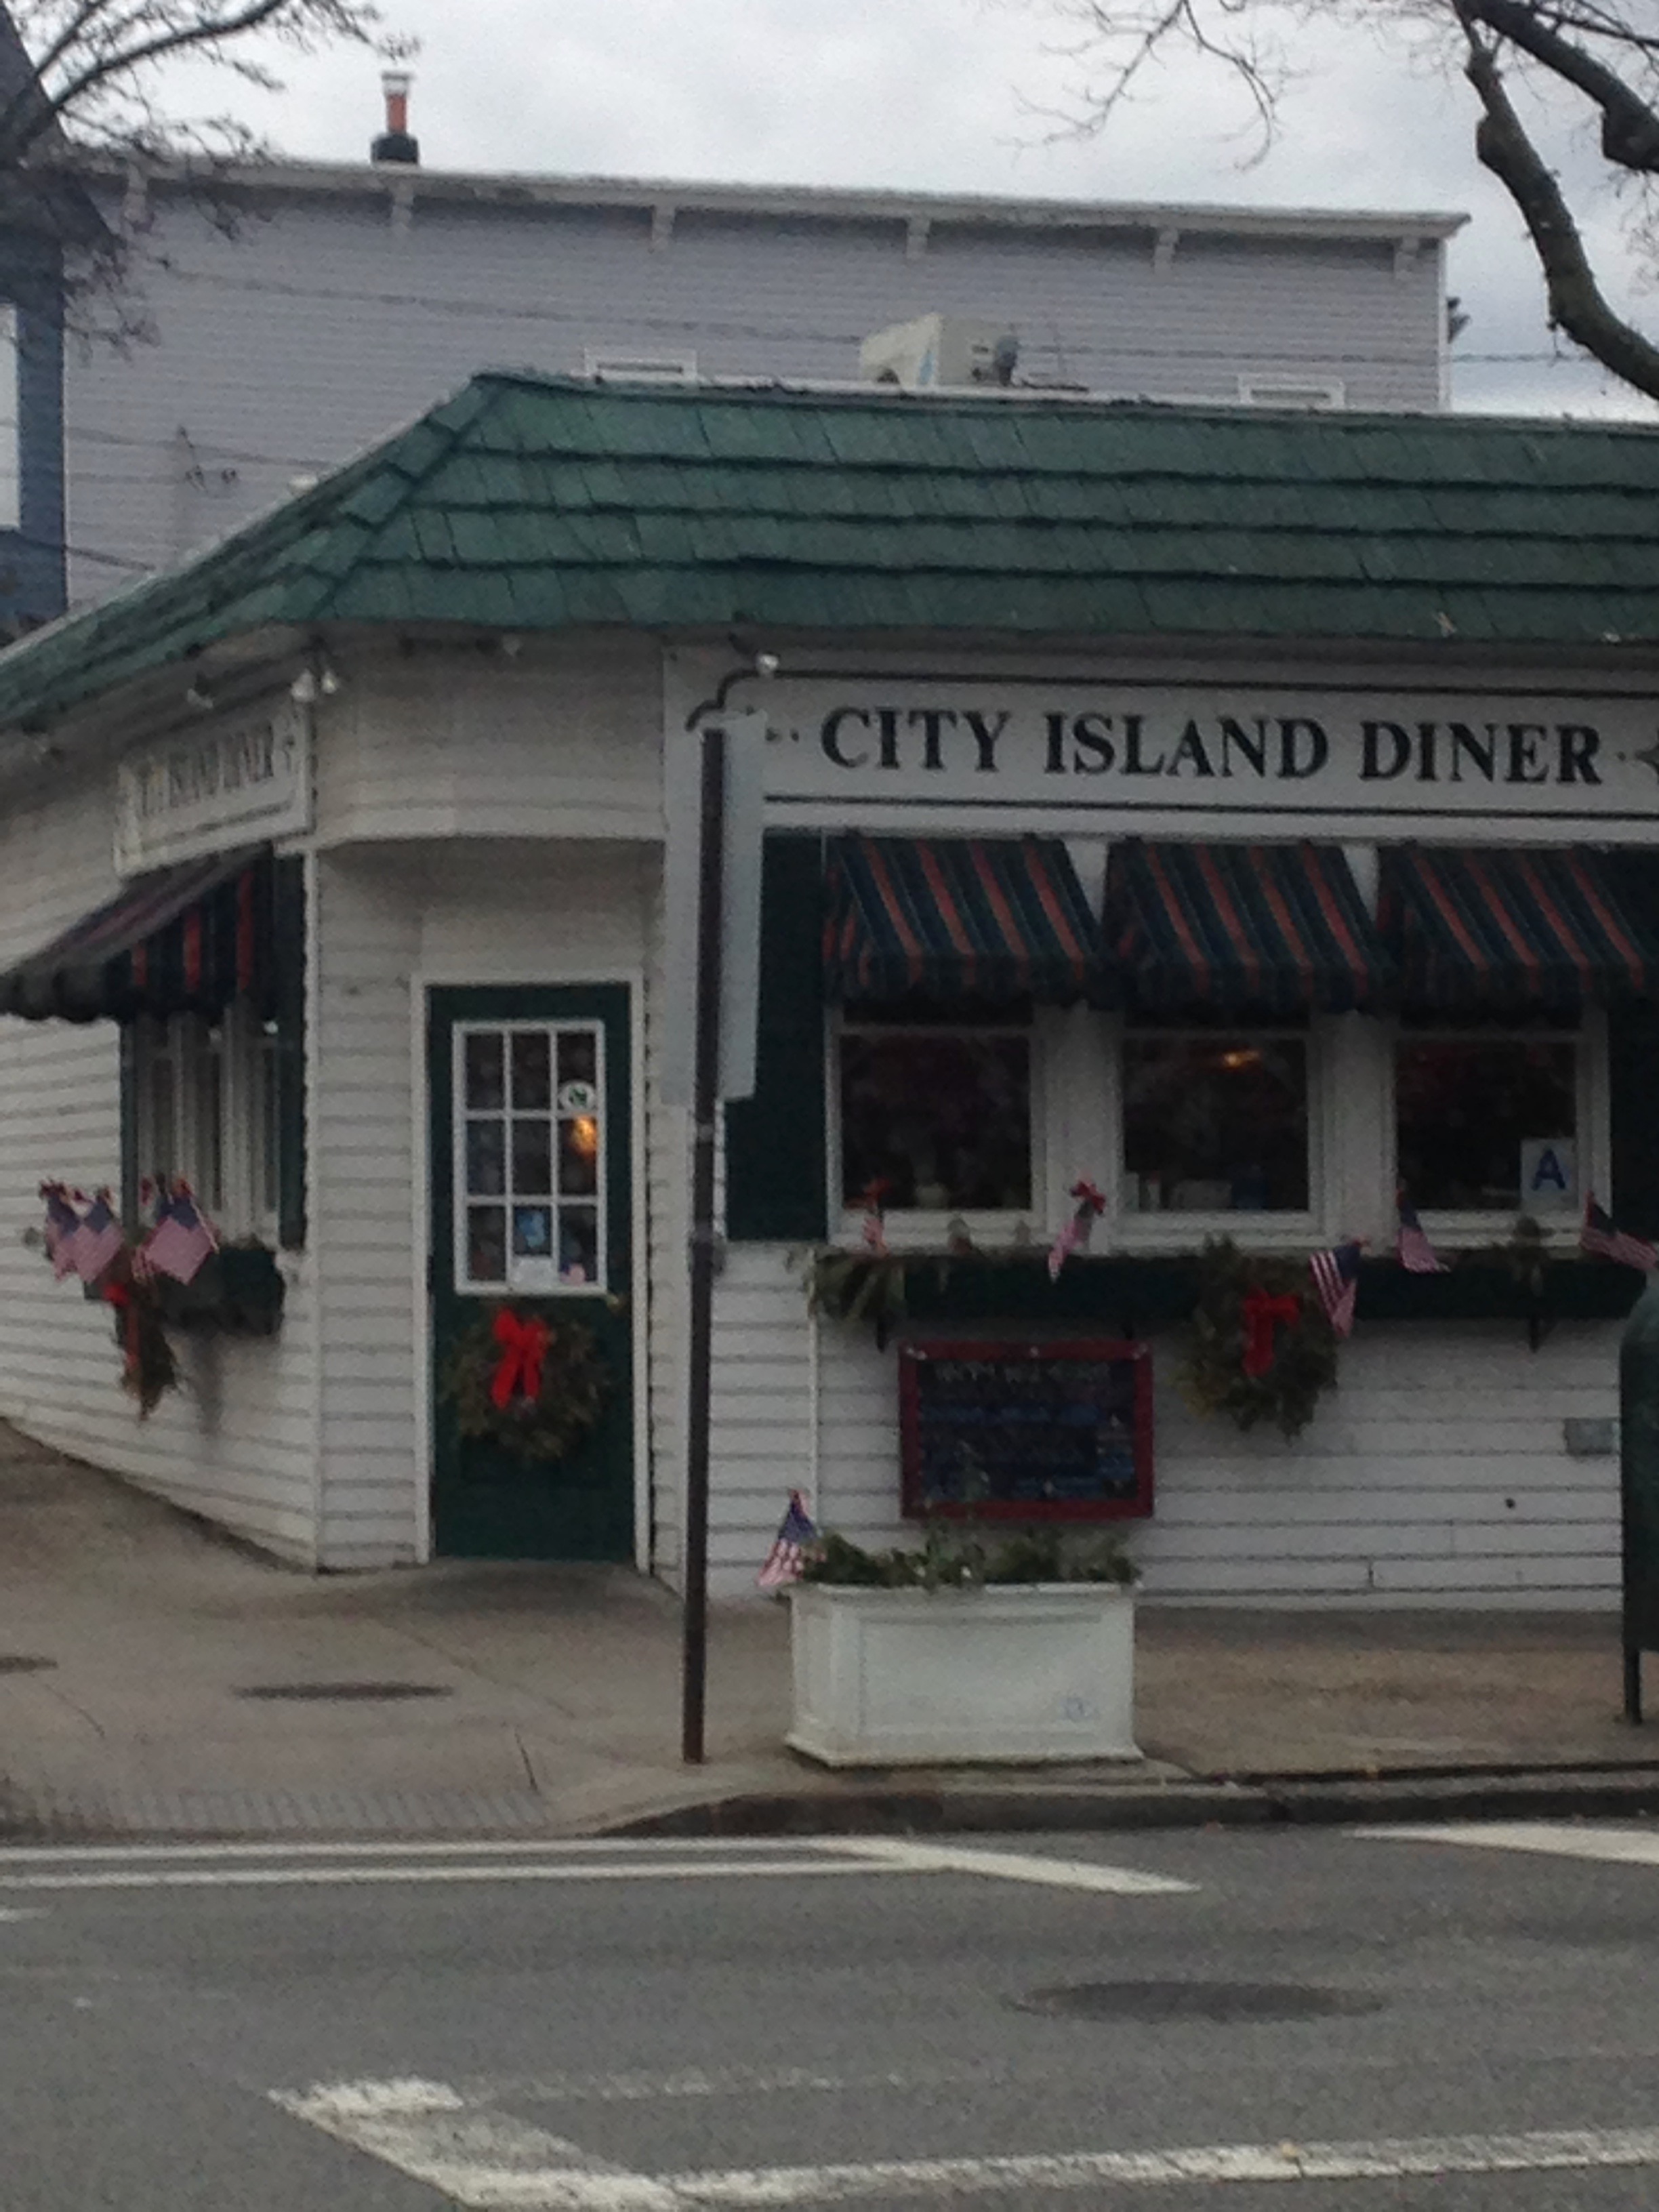 City Island Diner, with "Snug" next door